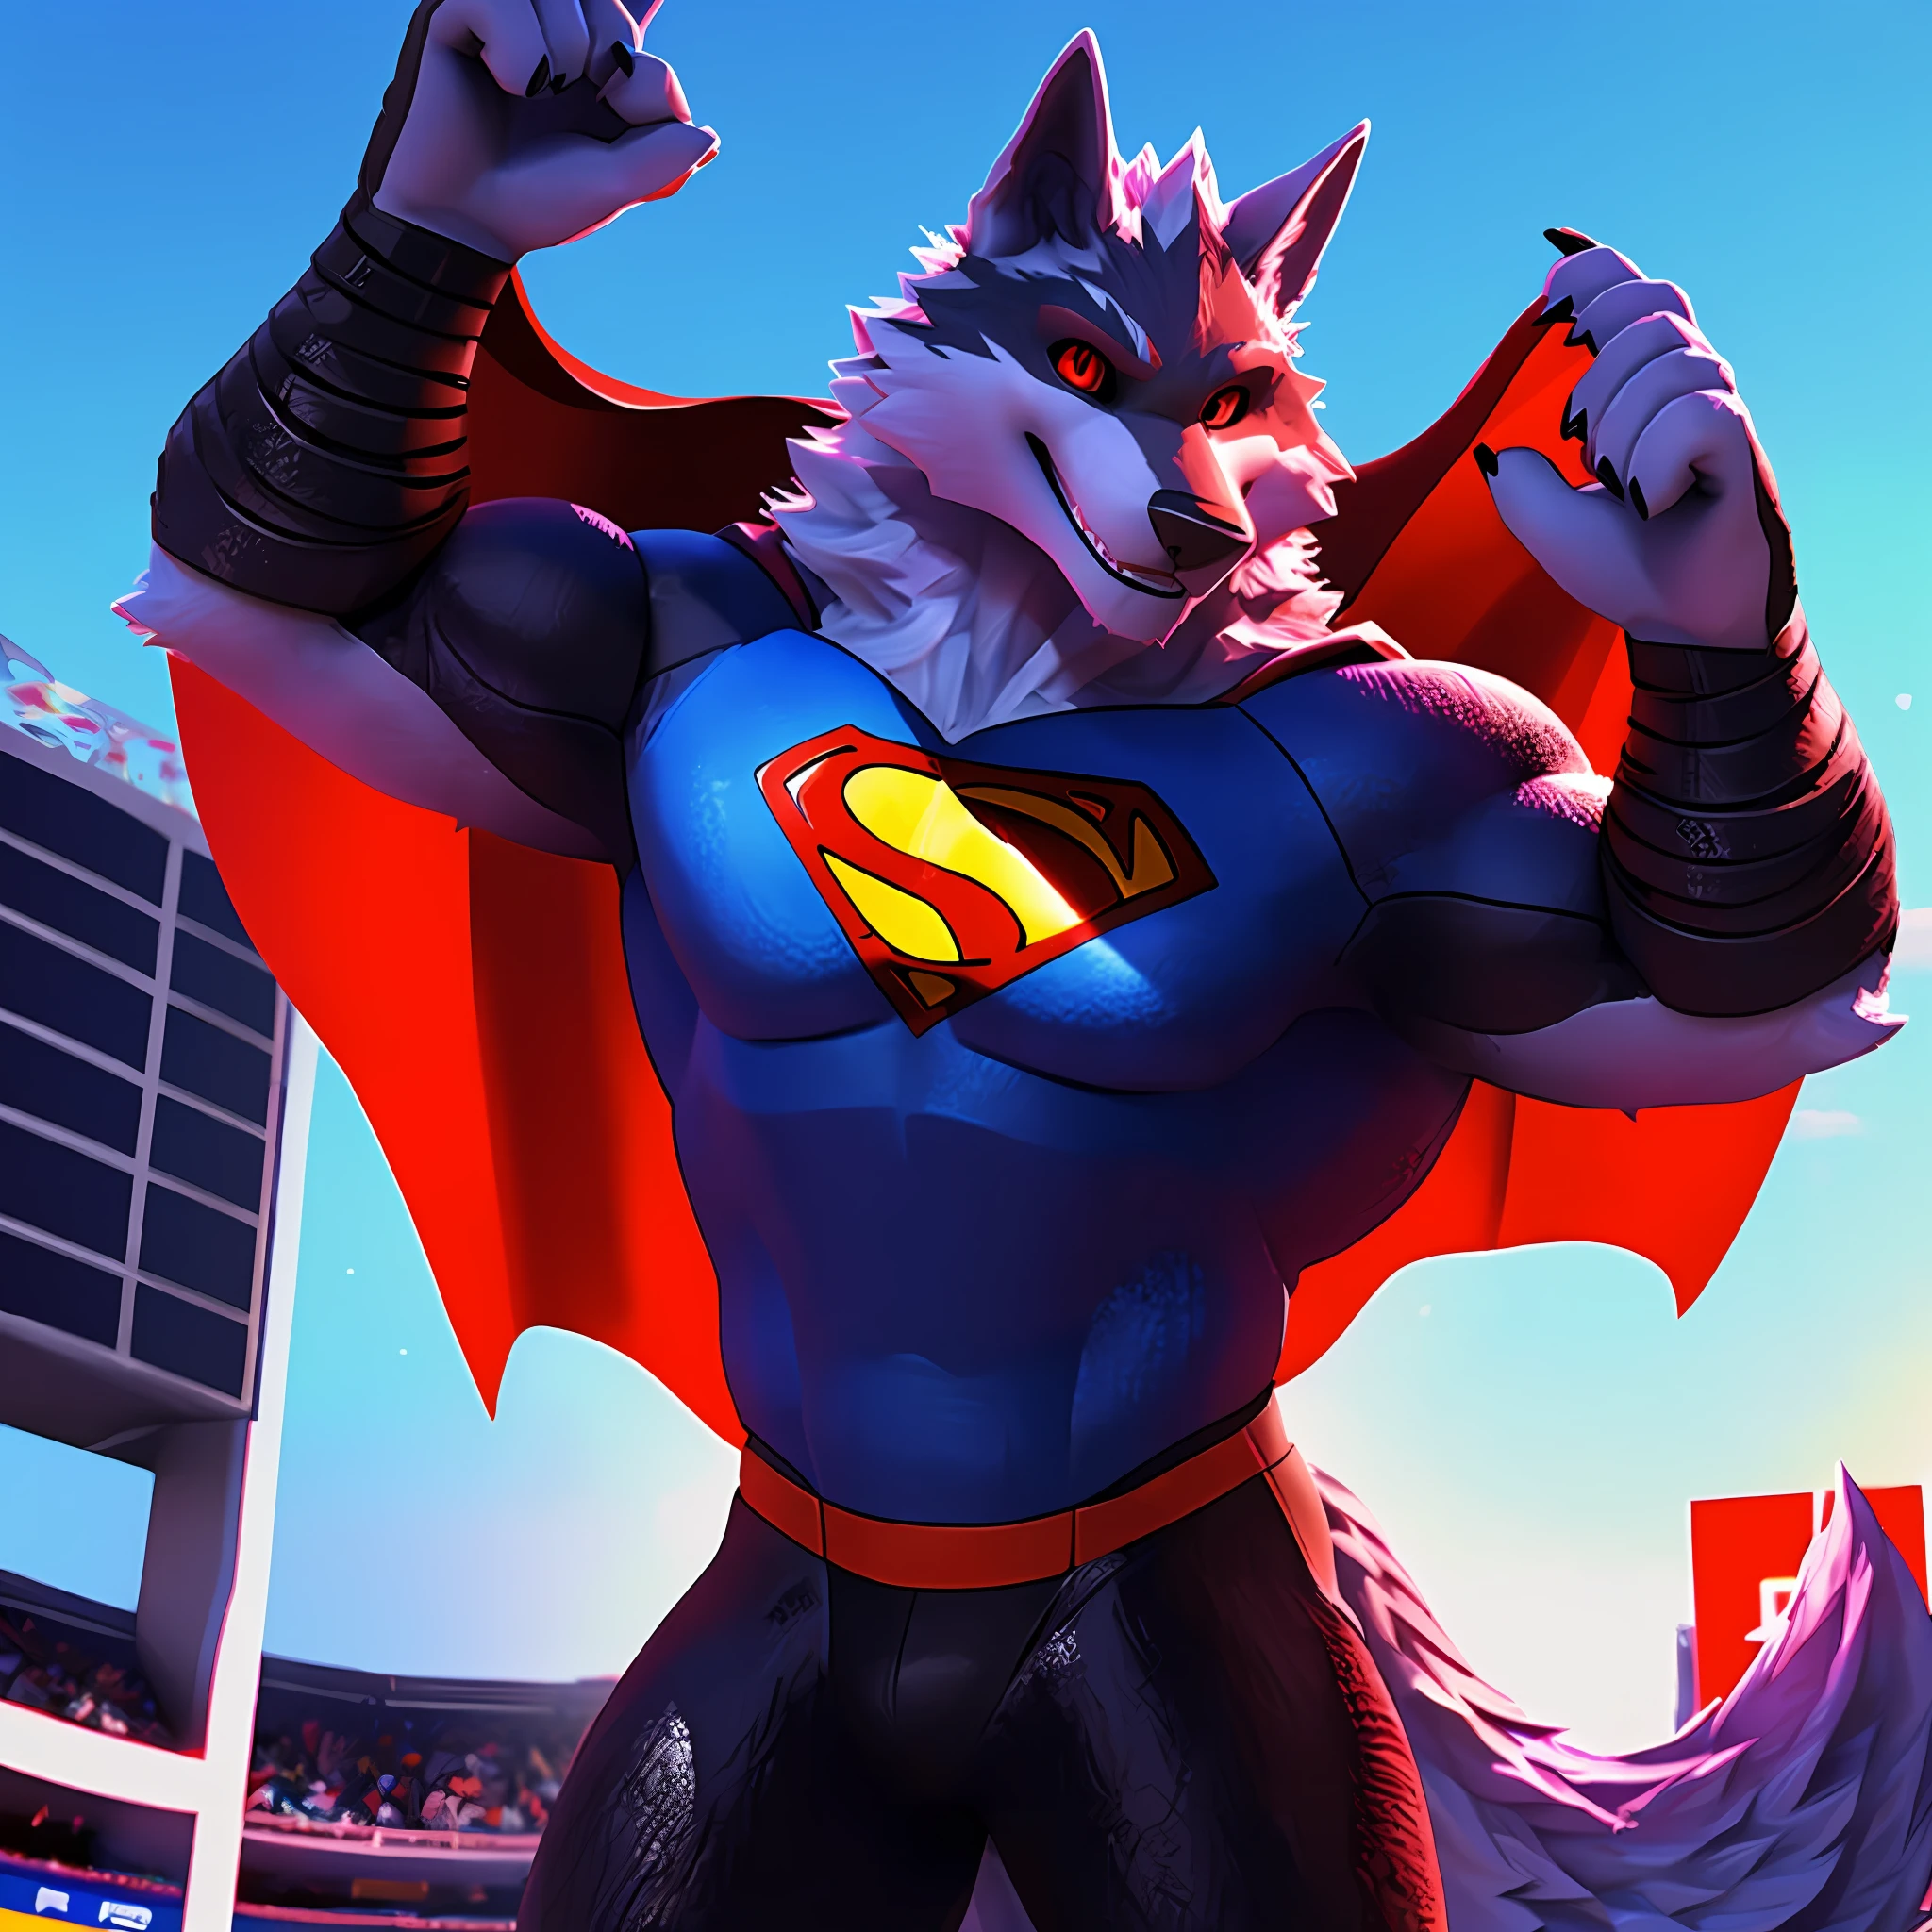 Death Wolf fliegt im Superman-Cosplay umher, rettet das schwule Publikum in seinen Armen und blickt den Betrachter schließlich mit seinen sehr sinnlichen roten Augen und einem sehr sinnlichen Lächeln an. 3D ULTRA HD 8K